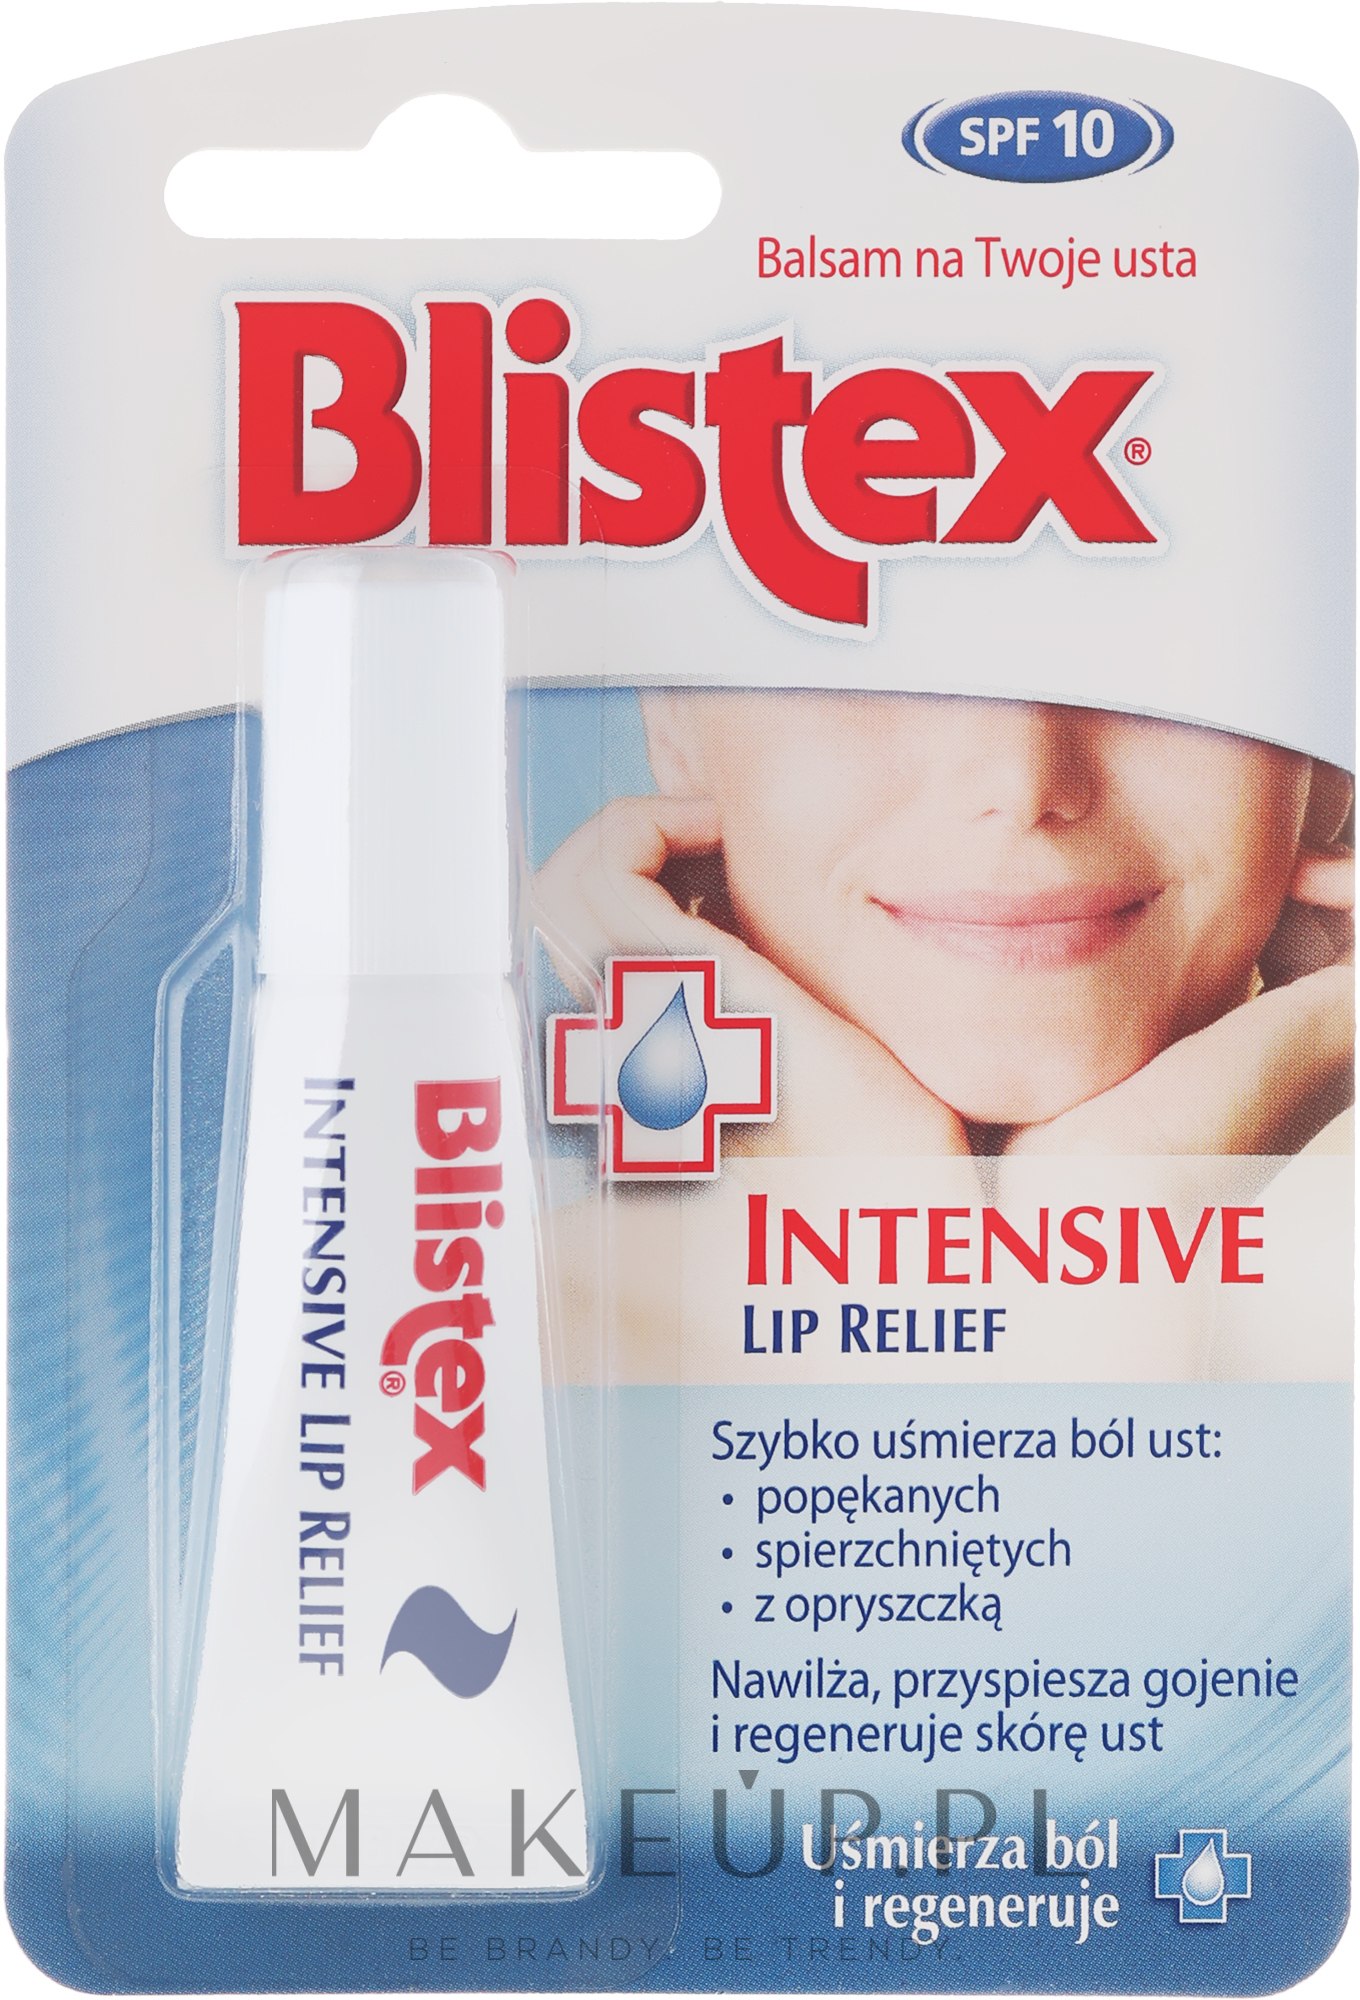 Nawilżająca pomadka kojąca do ust - Blistex Intensive Lip Relief Cream — Zdjęcie 6 ml